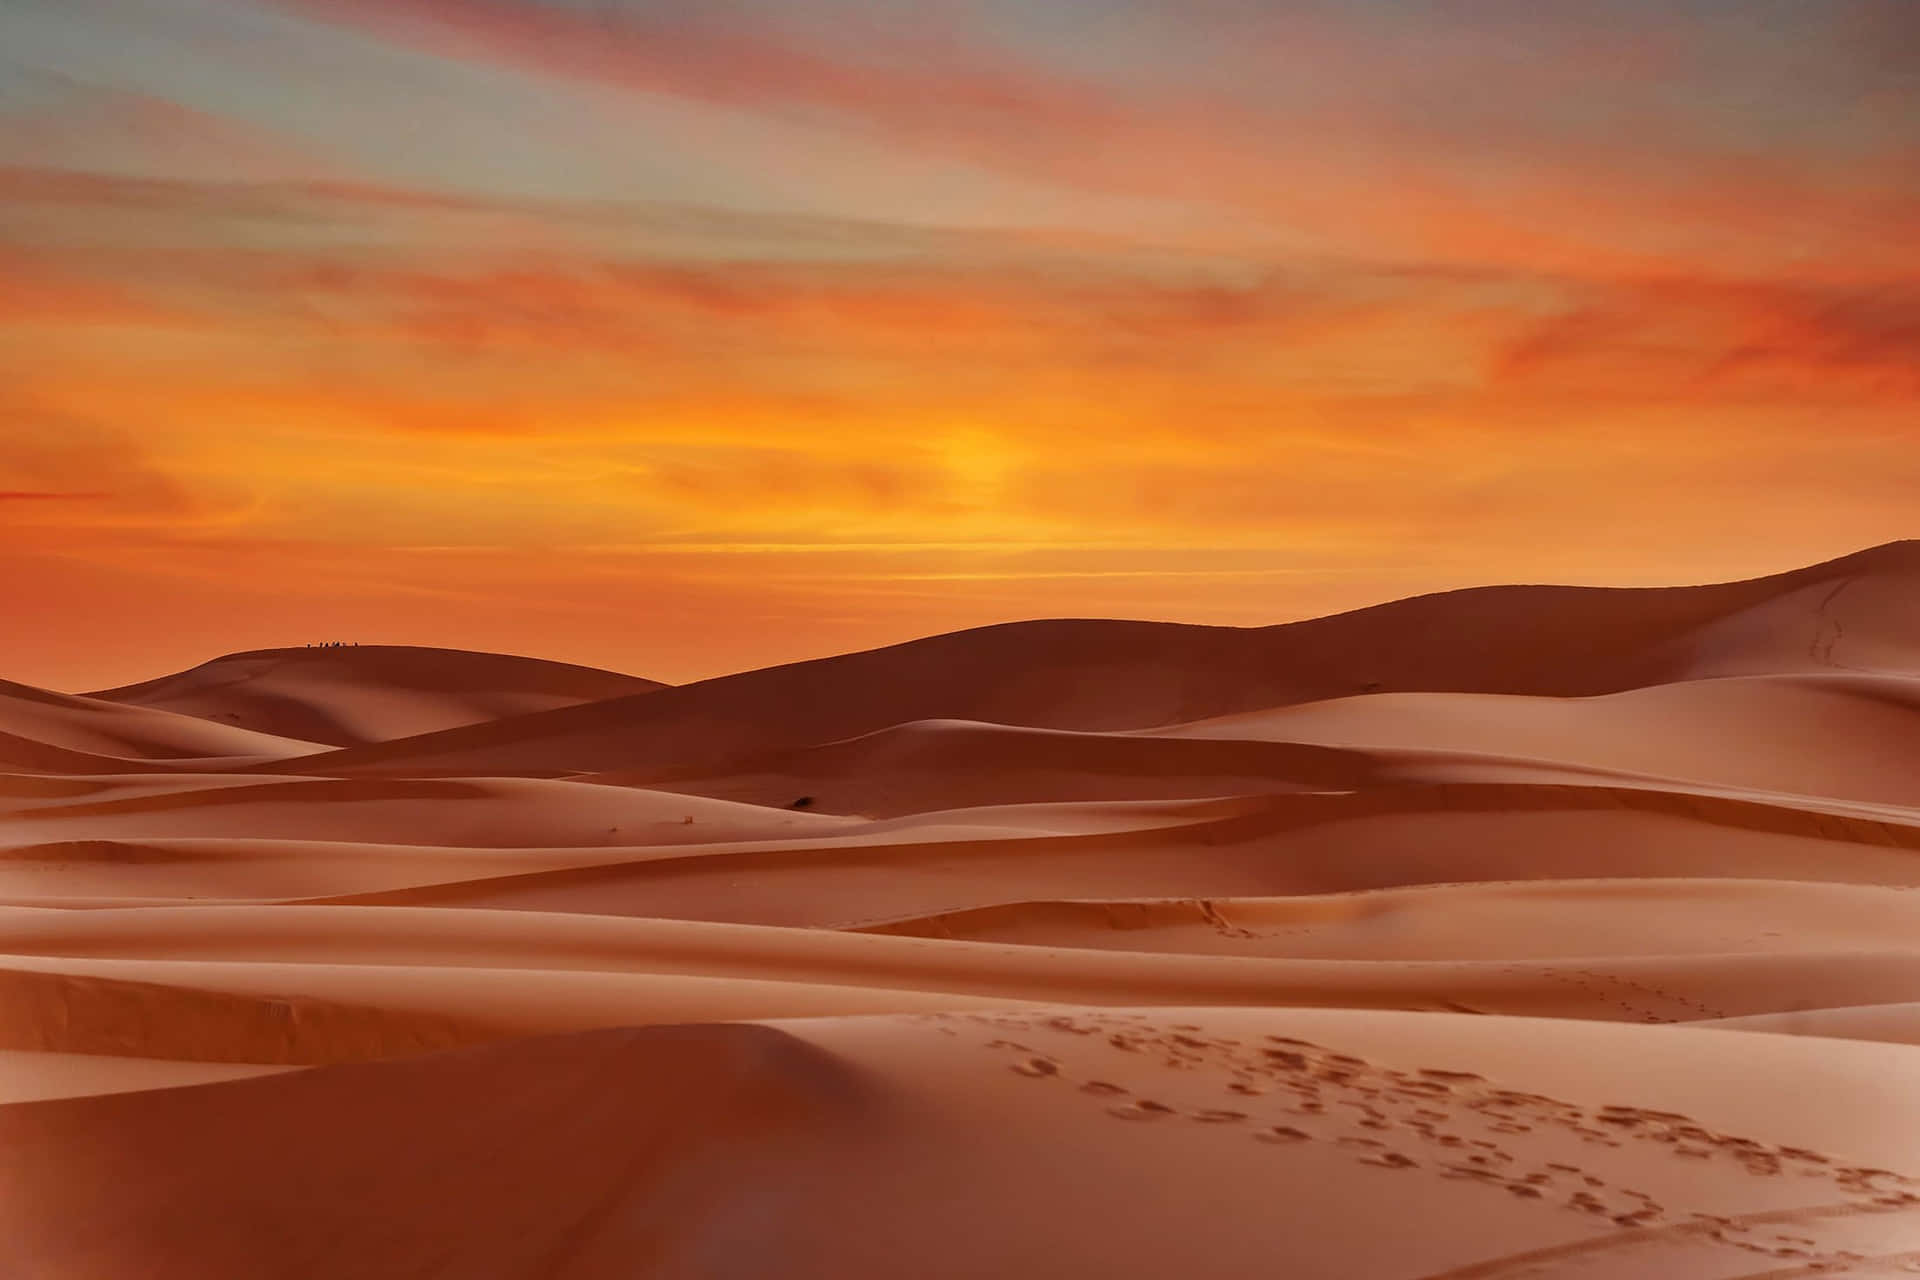 The Beauty of the Desert